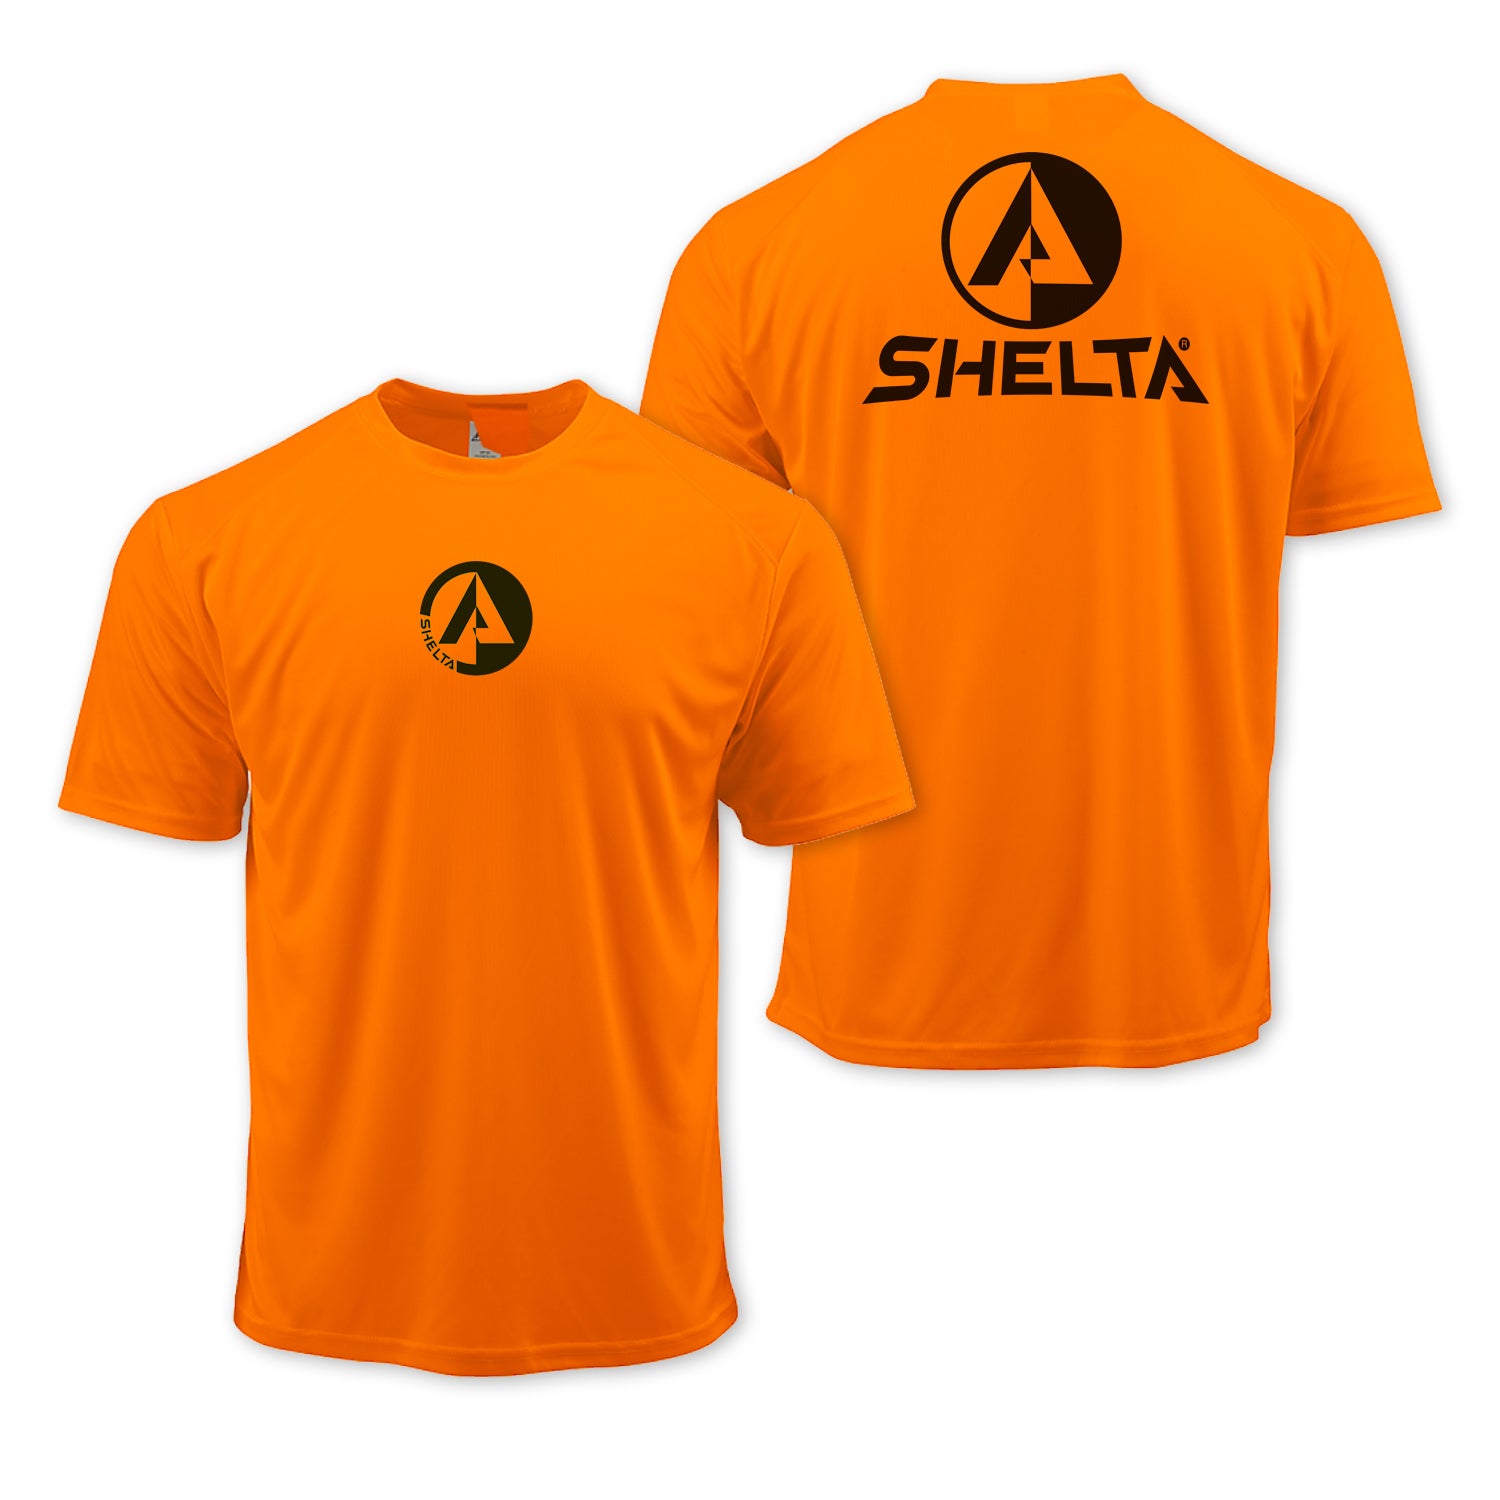 The Shelta S/S Corpo22 Logo in Bright Orange